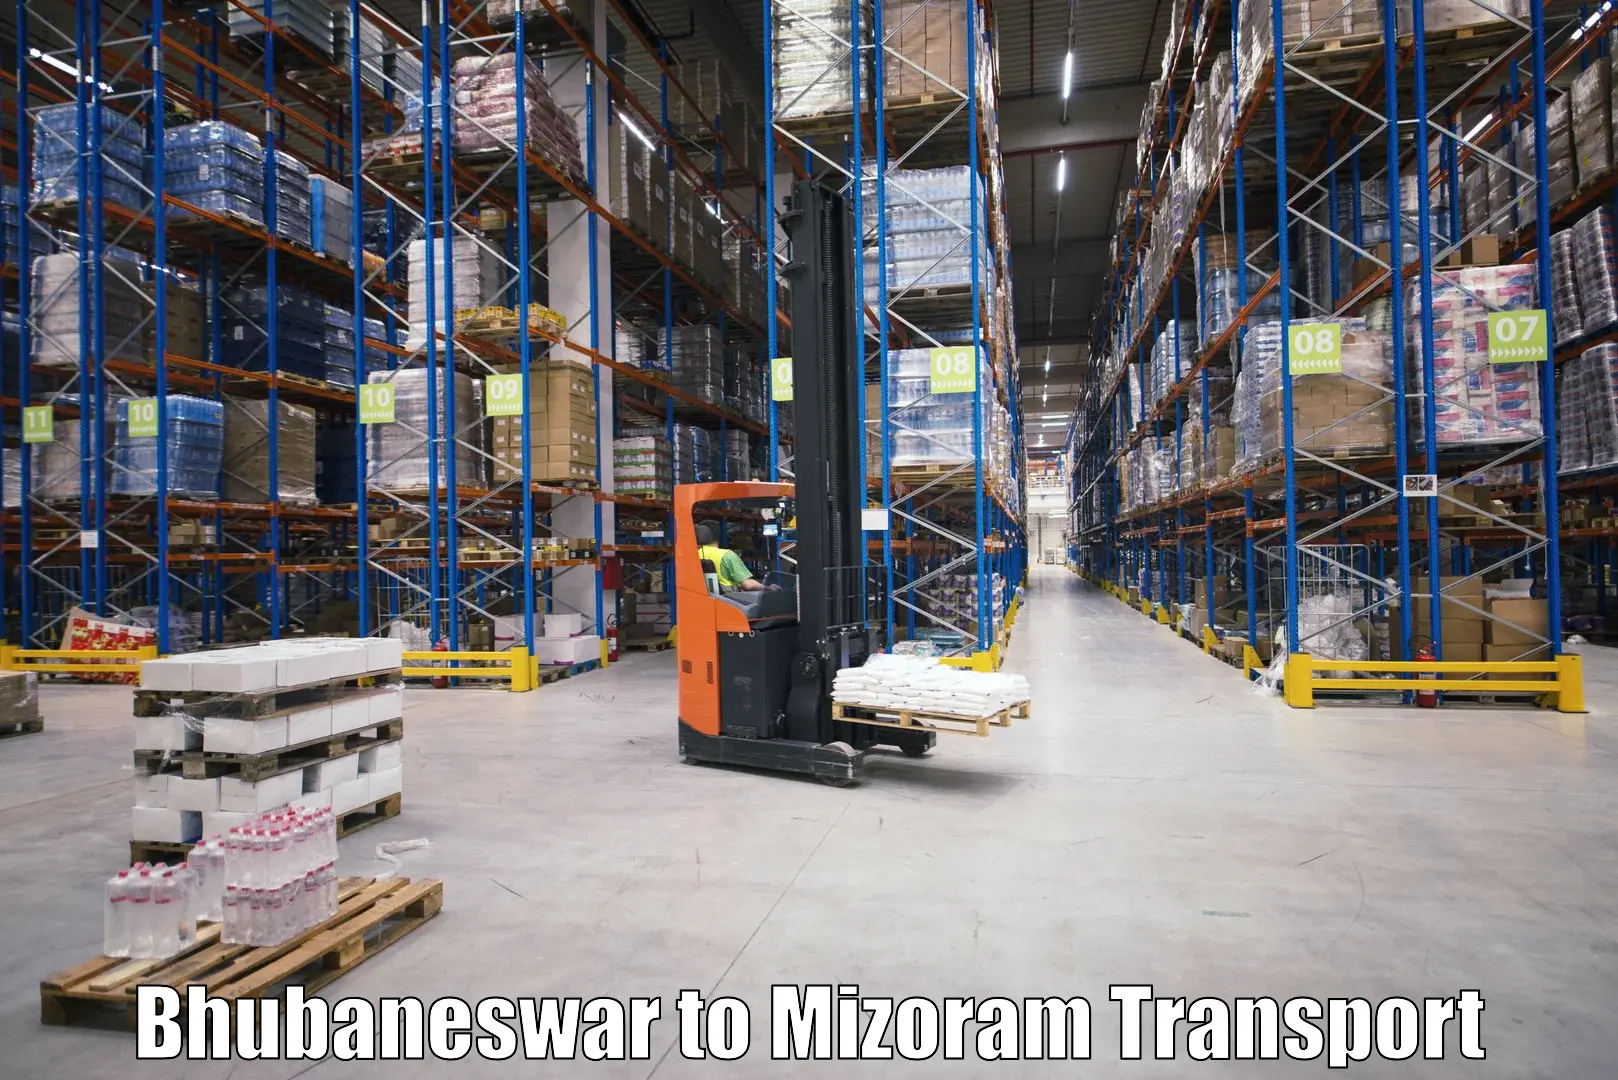 Furniture transport service Bhubaneswar to NIT Aizawl